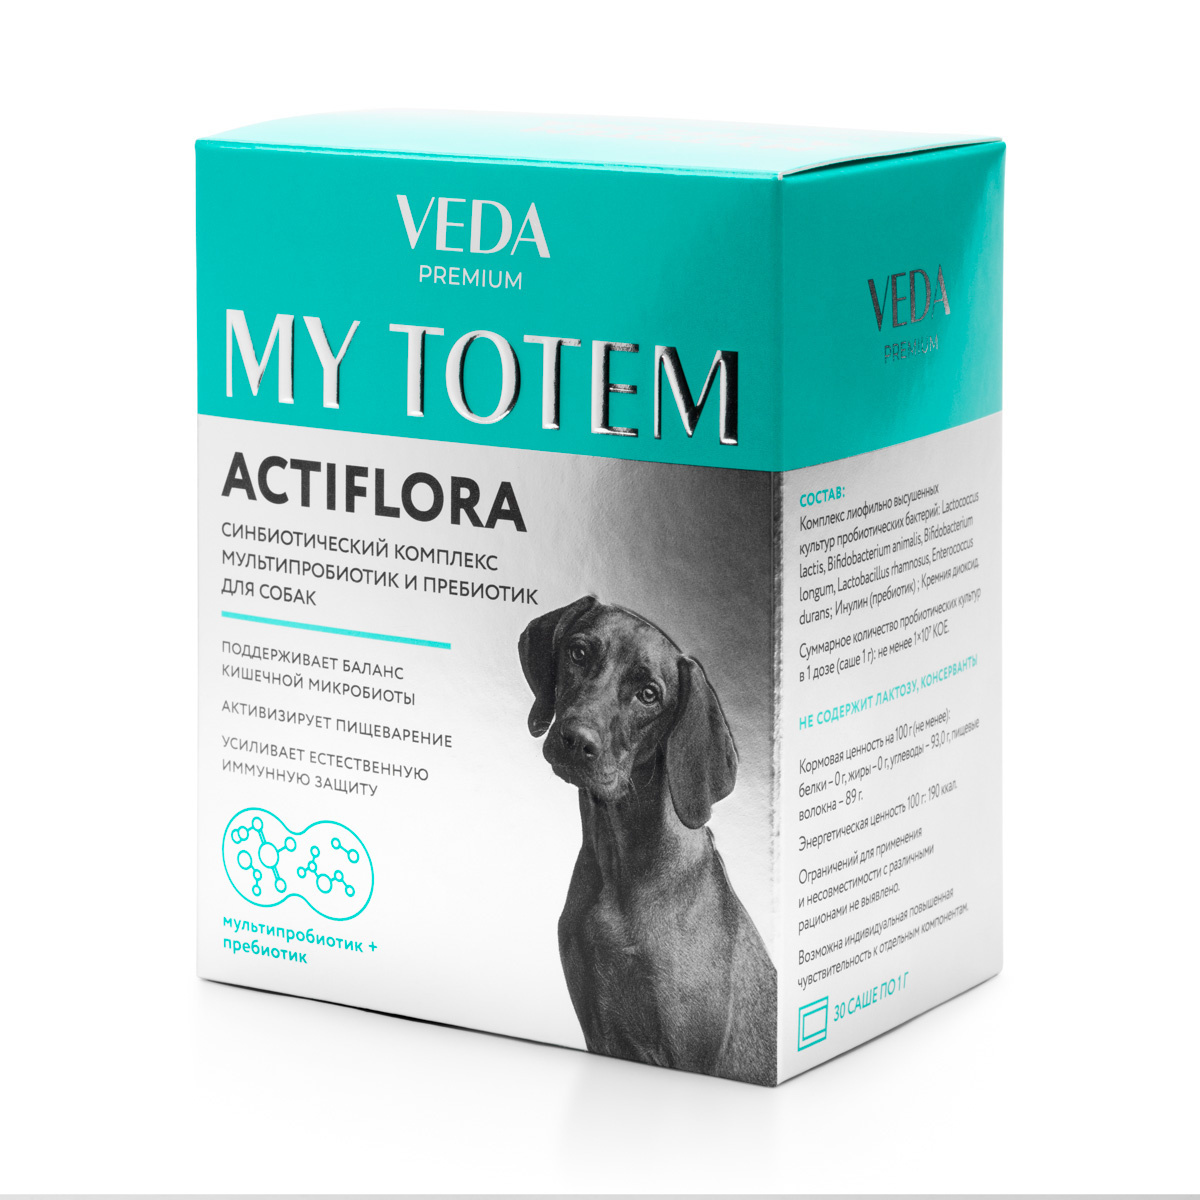 Веда Веда синбиотический комплекс для собак MY TOTEM ACTIFLORA (30 г) my totem actiflora синбиотический комплекс для собак 30 саше по 1 г